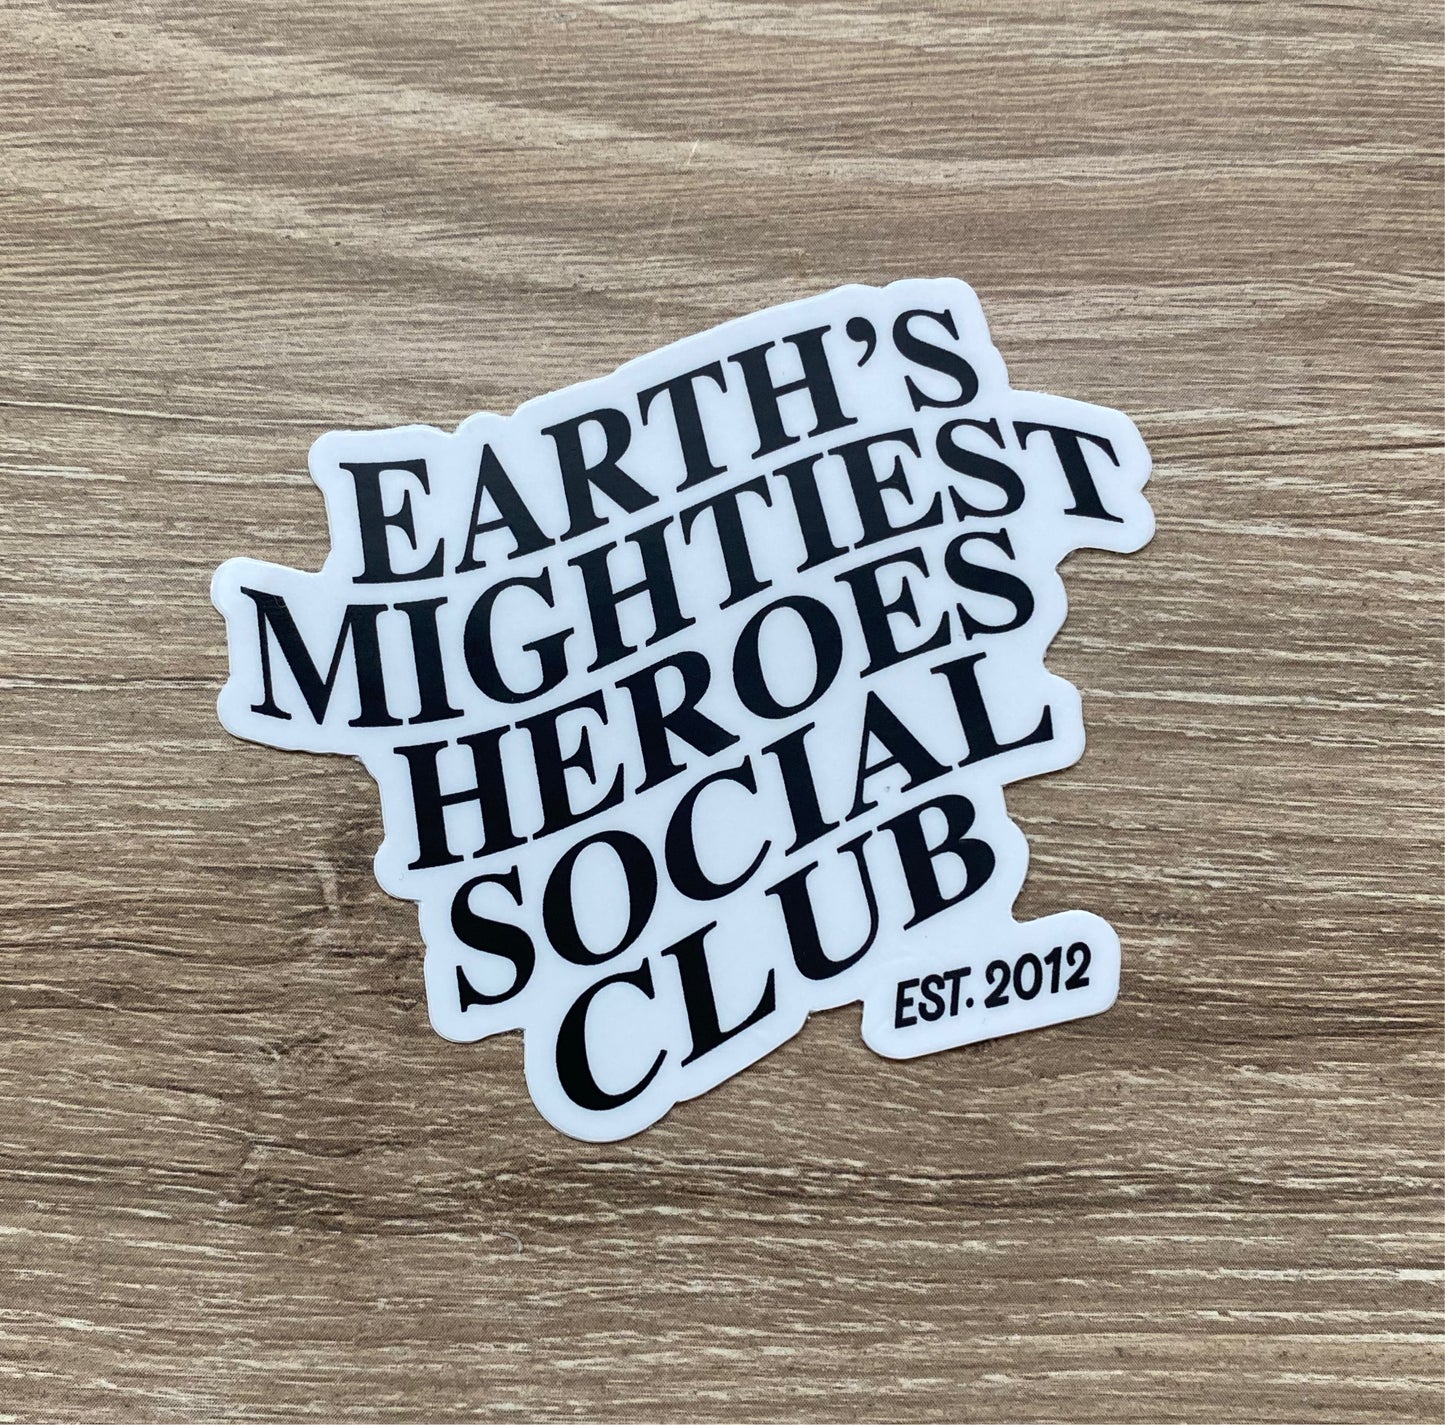 Mightiest Heroes Social Club Sticker